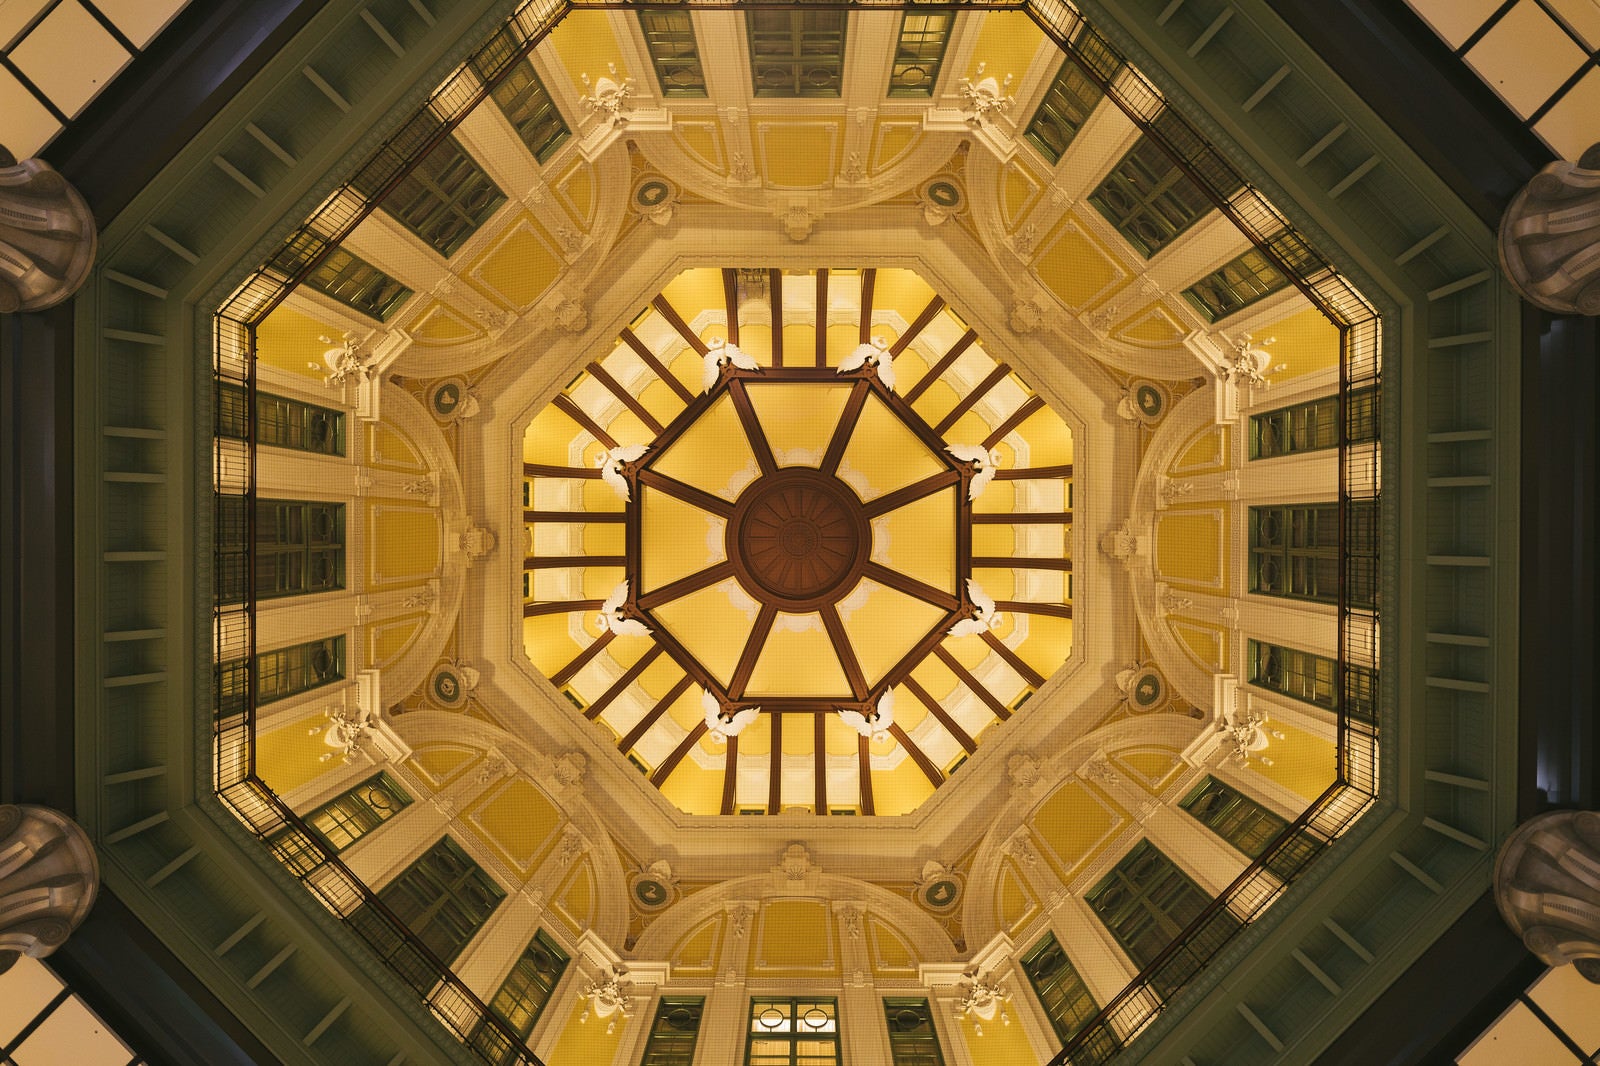 「東京駅ドーム天井の真上の様子」の写真